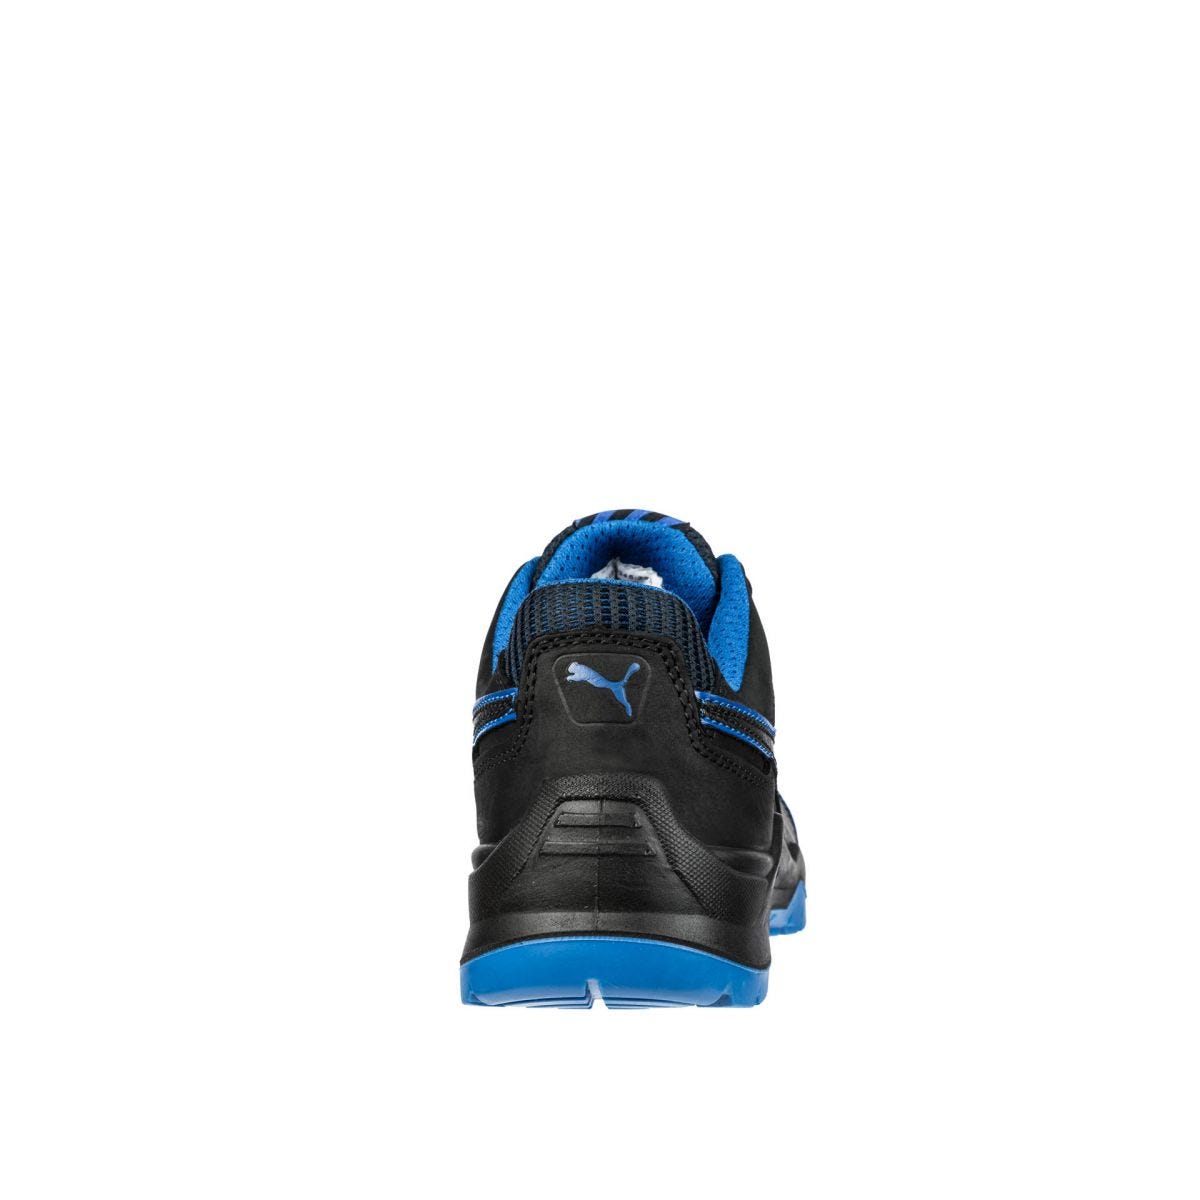 Chaussures de sécurité Argon RX low S3 ESD SRC bleu - Puma - Taille 43 1